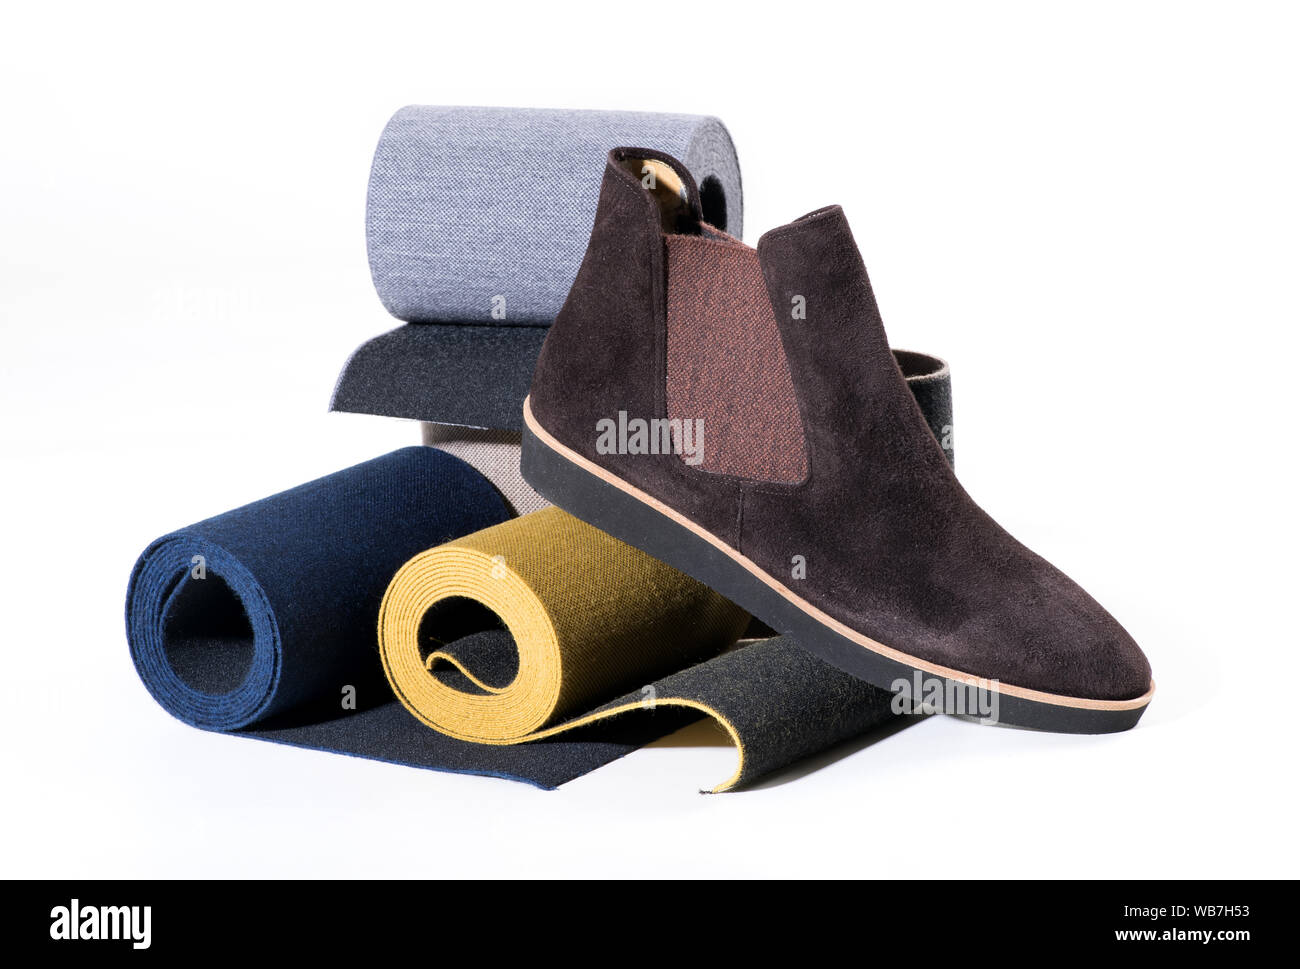 Stilvolle braun mans Schuh mit Gummizug auf breiten Rollen mit elastischen Bändern in verschiedenen Farben auf einem weißen Hintergrund angezeigt. Stockfoto